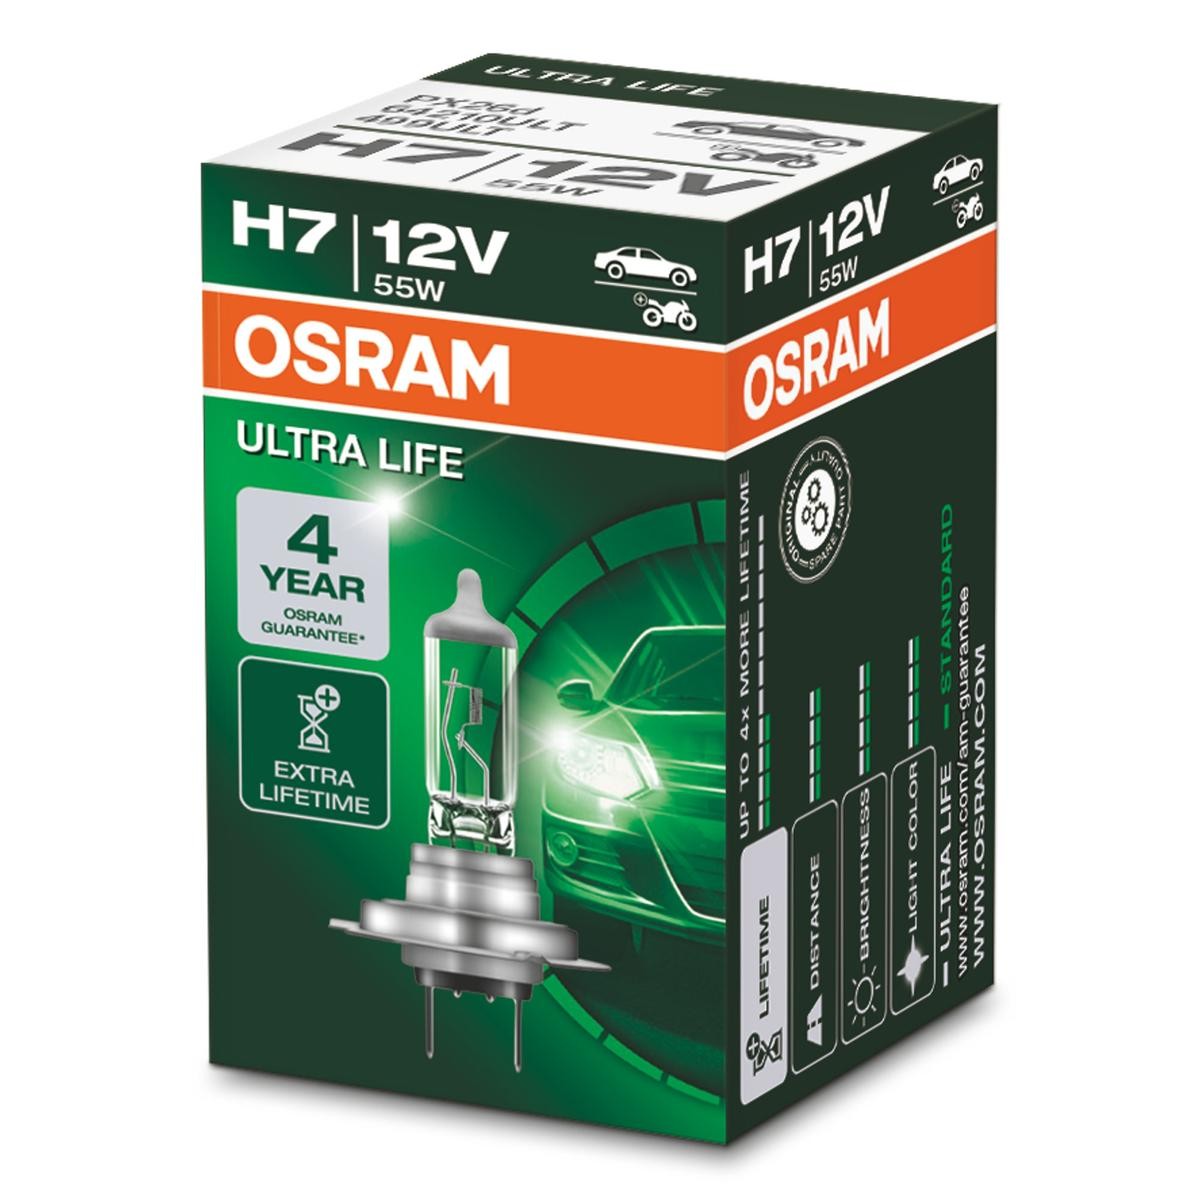 64210ULT OSRAM Headlight bulbs CHRYSLER H7 12V 55W PX26d, 3200K, Halogen